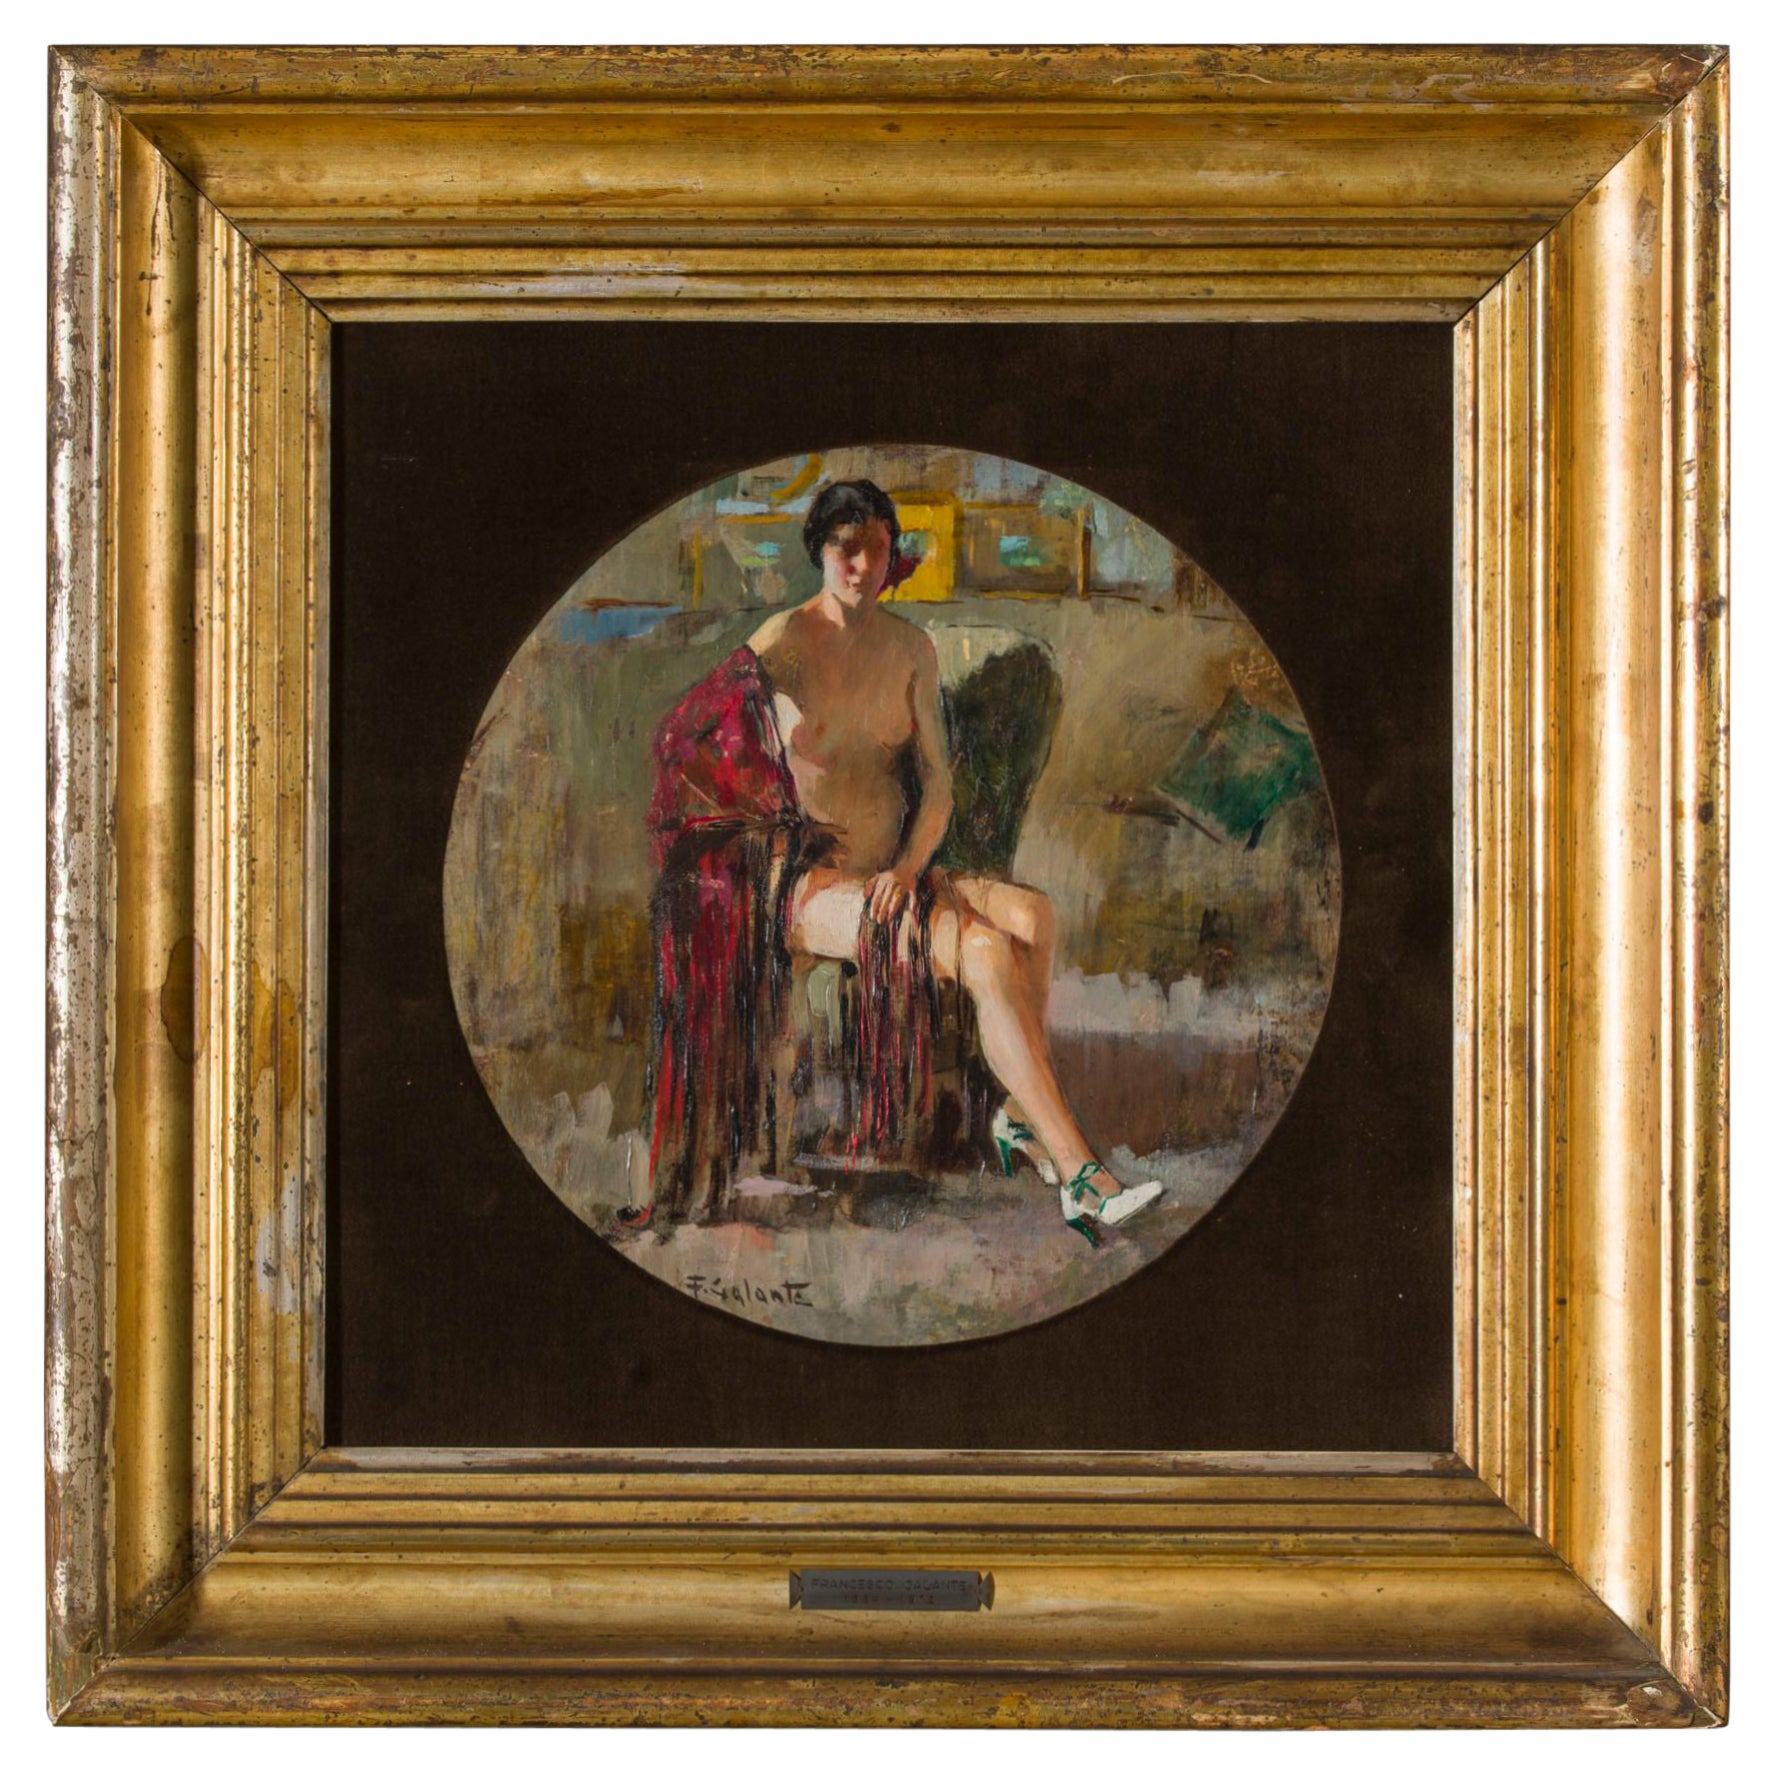 Francesco Galante peint un nu de femme des années 1930